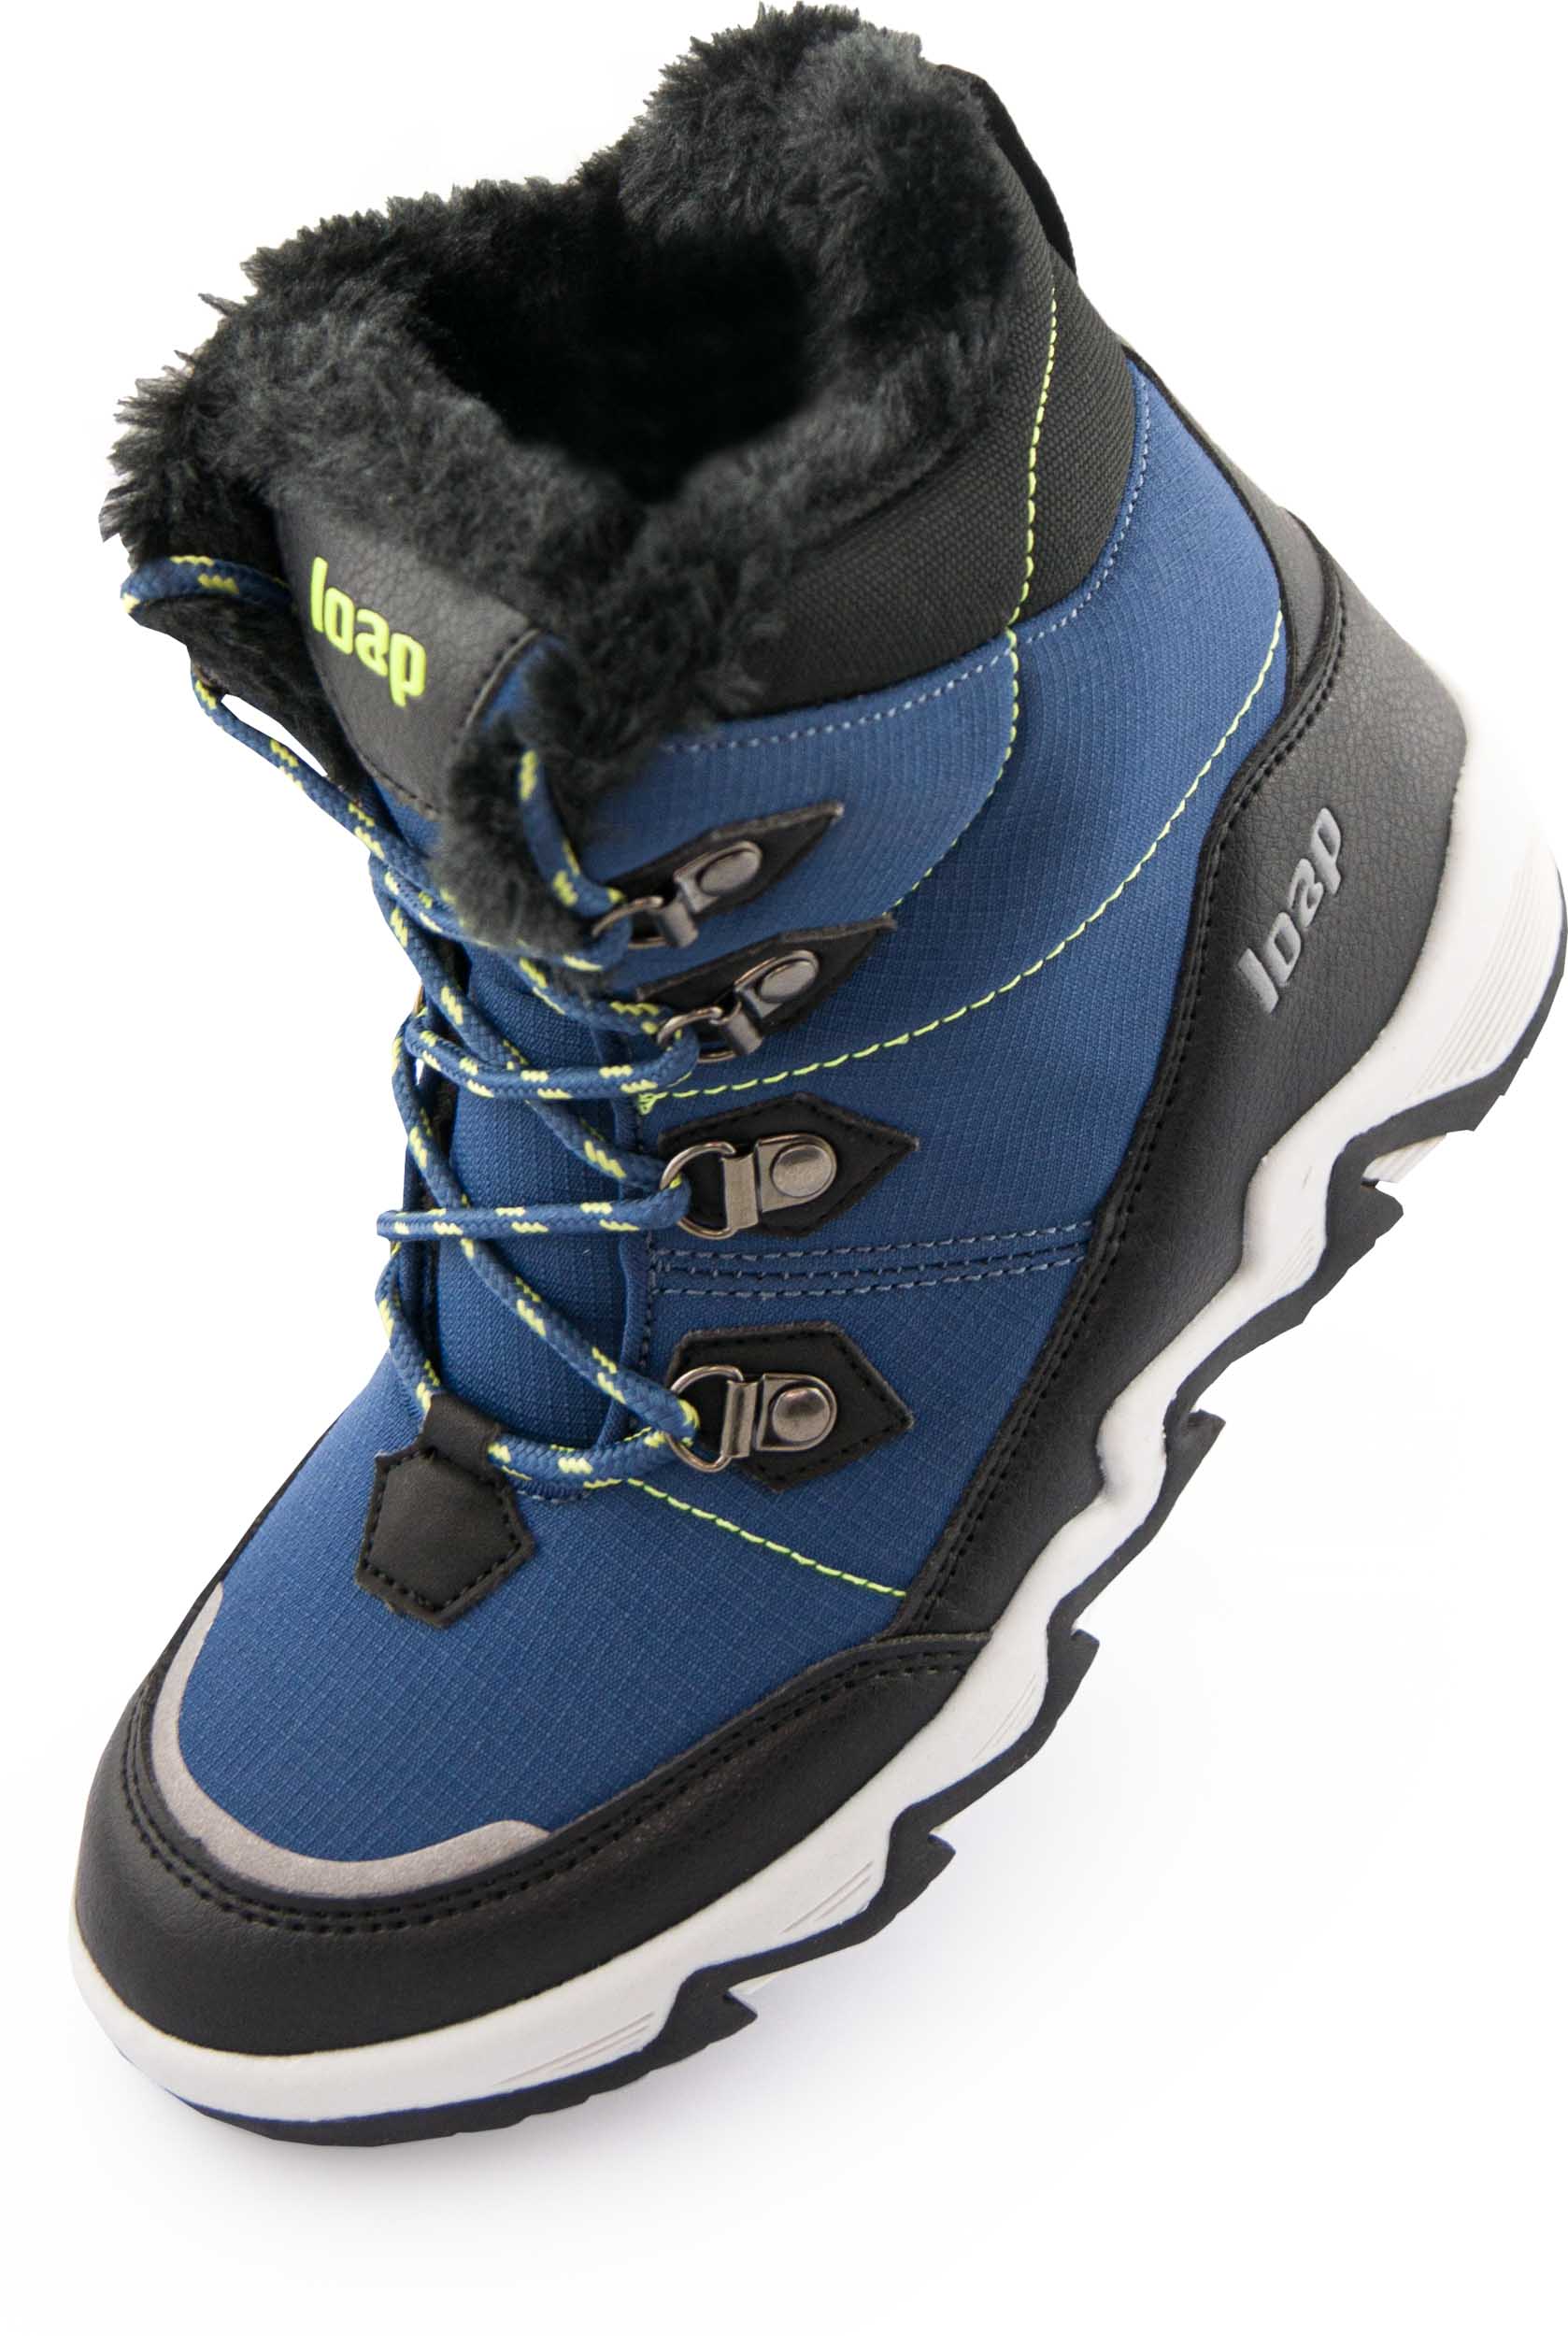 Dětské zimní boty LOAP LIMA blue|35